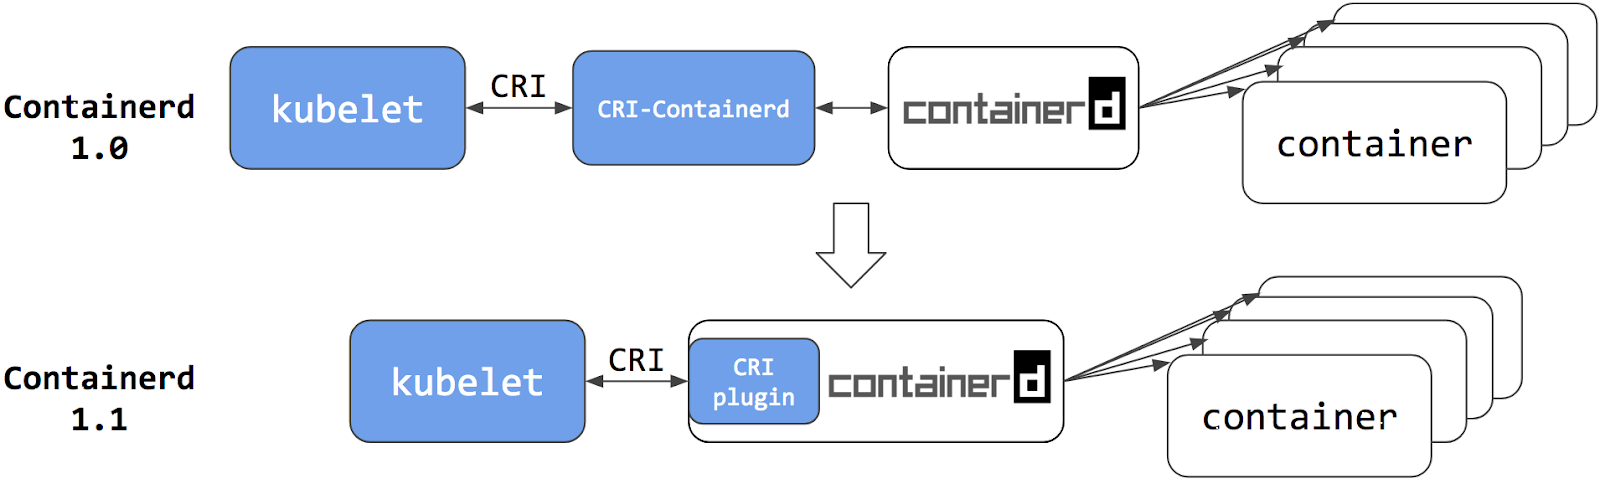 cri-containerd2